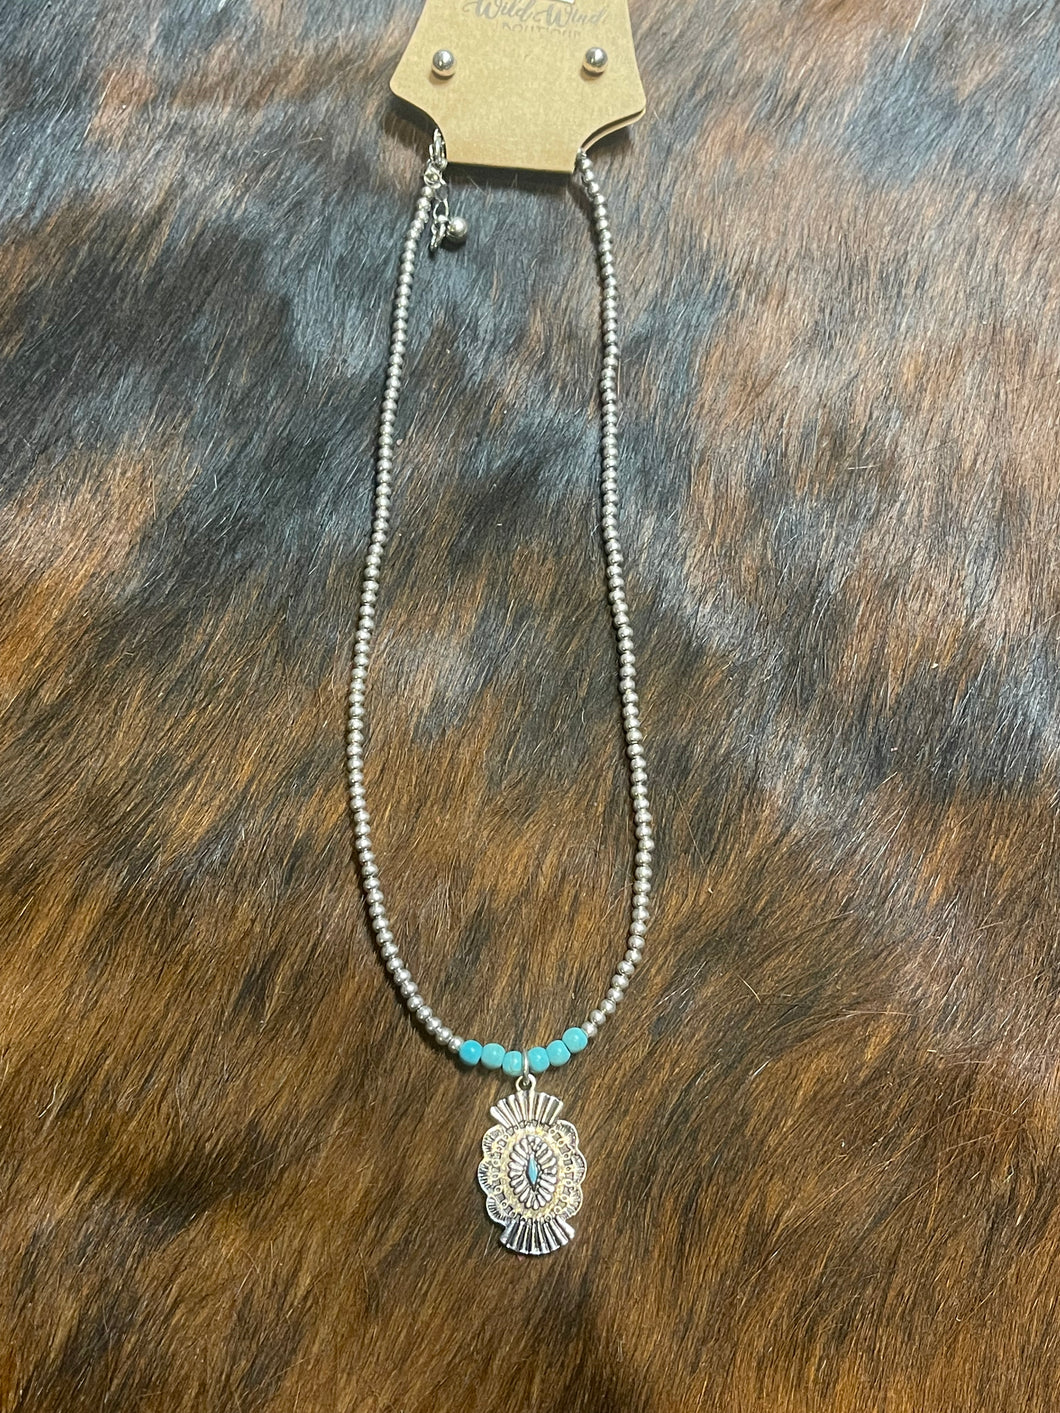 Boulder Necklace